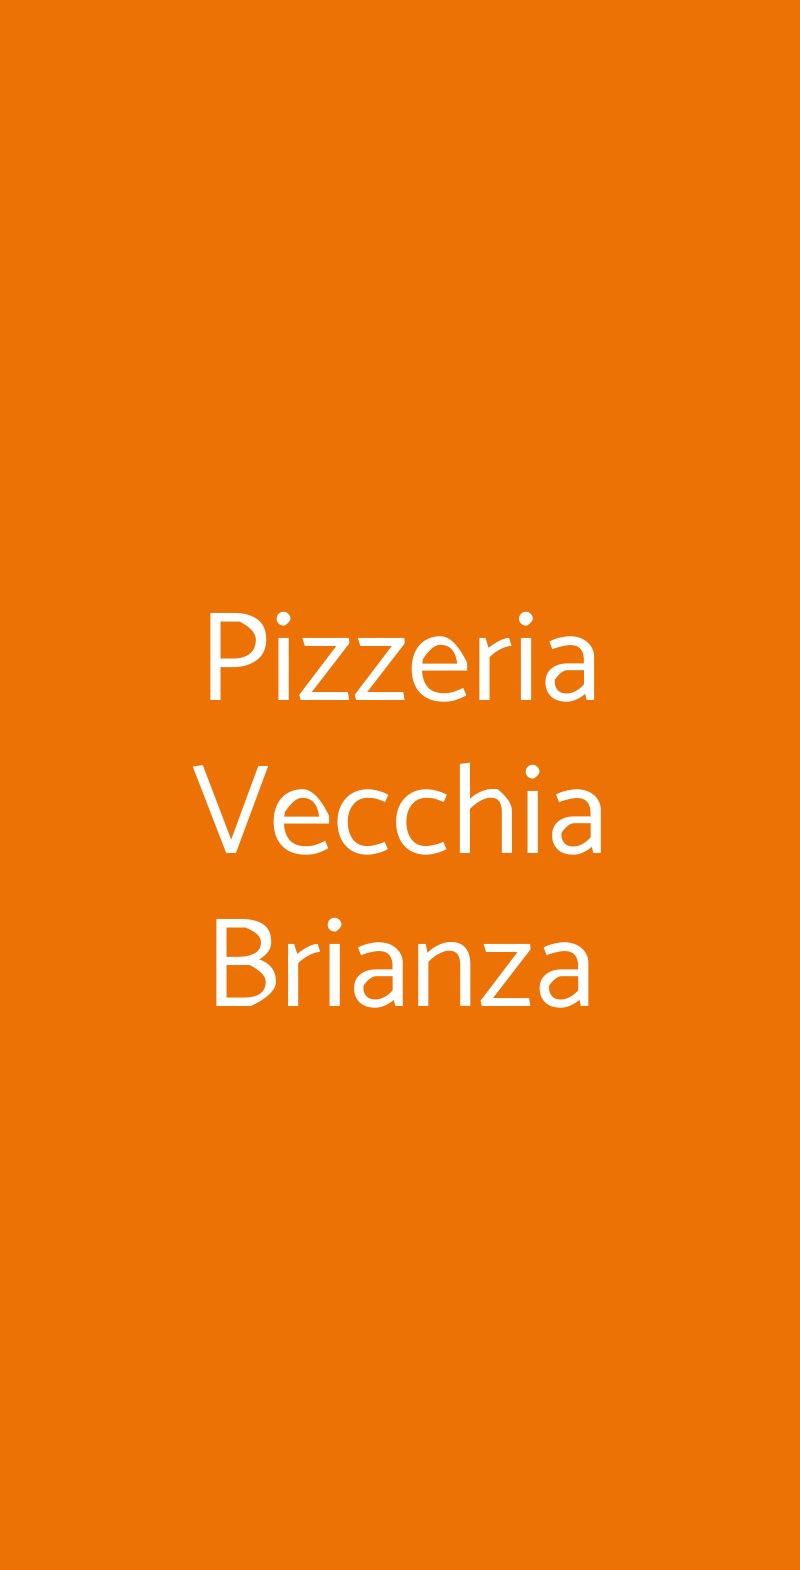 Pizzeria Vecchia Brianza Colle Brianza menù 1 pagina